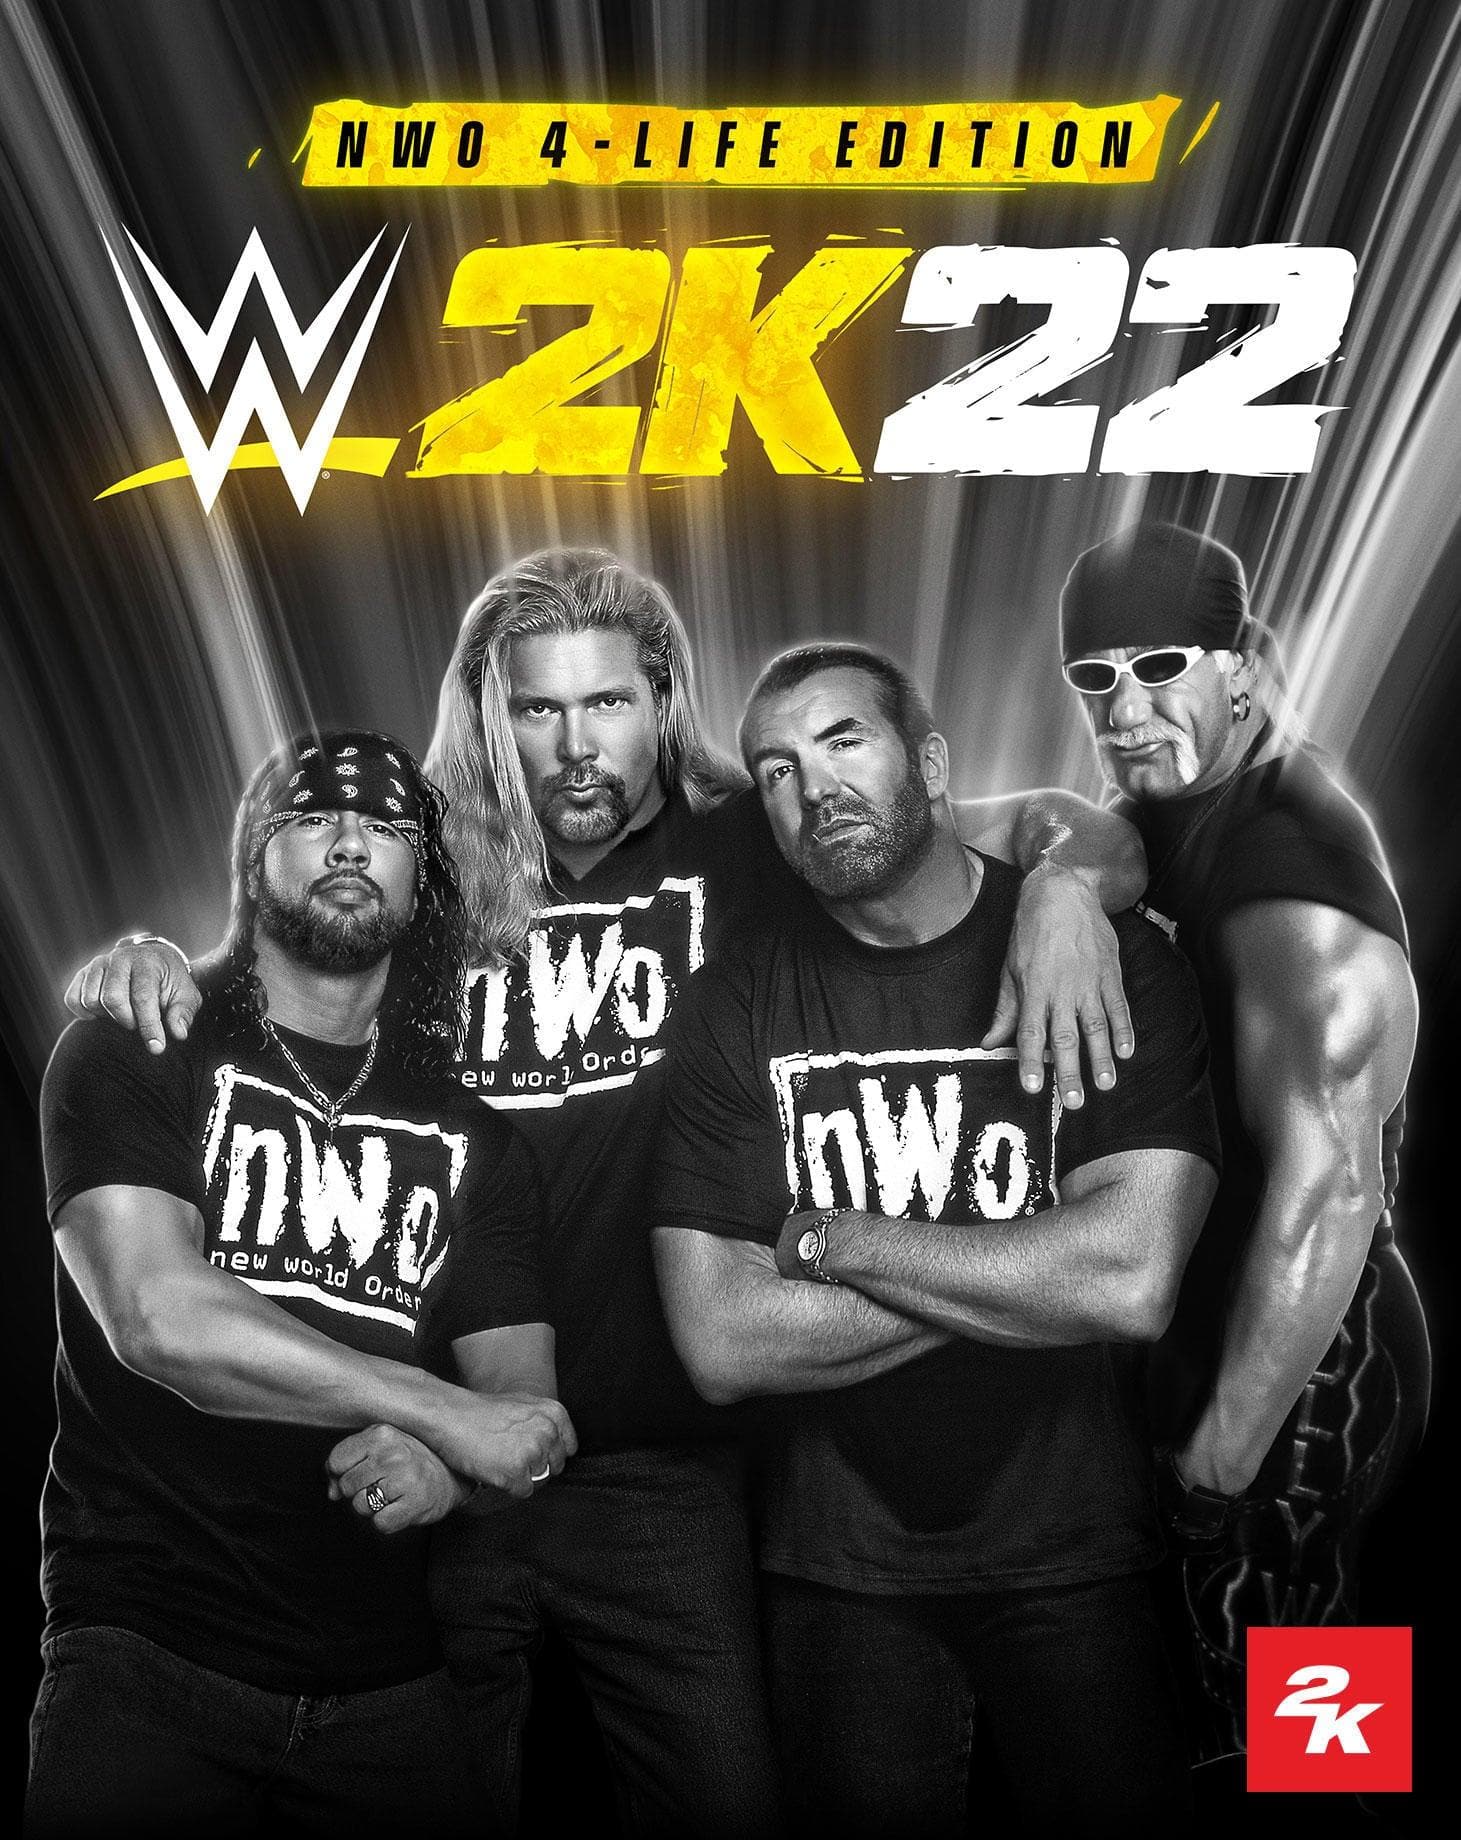 WWE 2K22 (nWo 4-Life Edition) - Xbox - EXON - גיימינג ותוכנות - משחקים ותוכנות למחשב ולאקס בוקס!